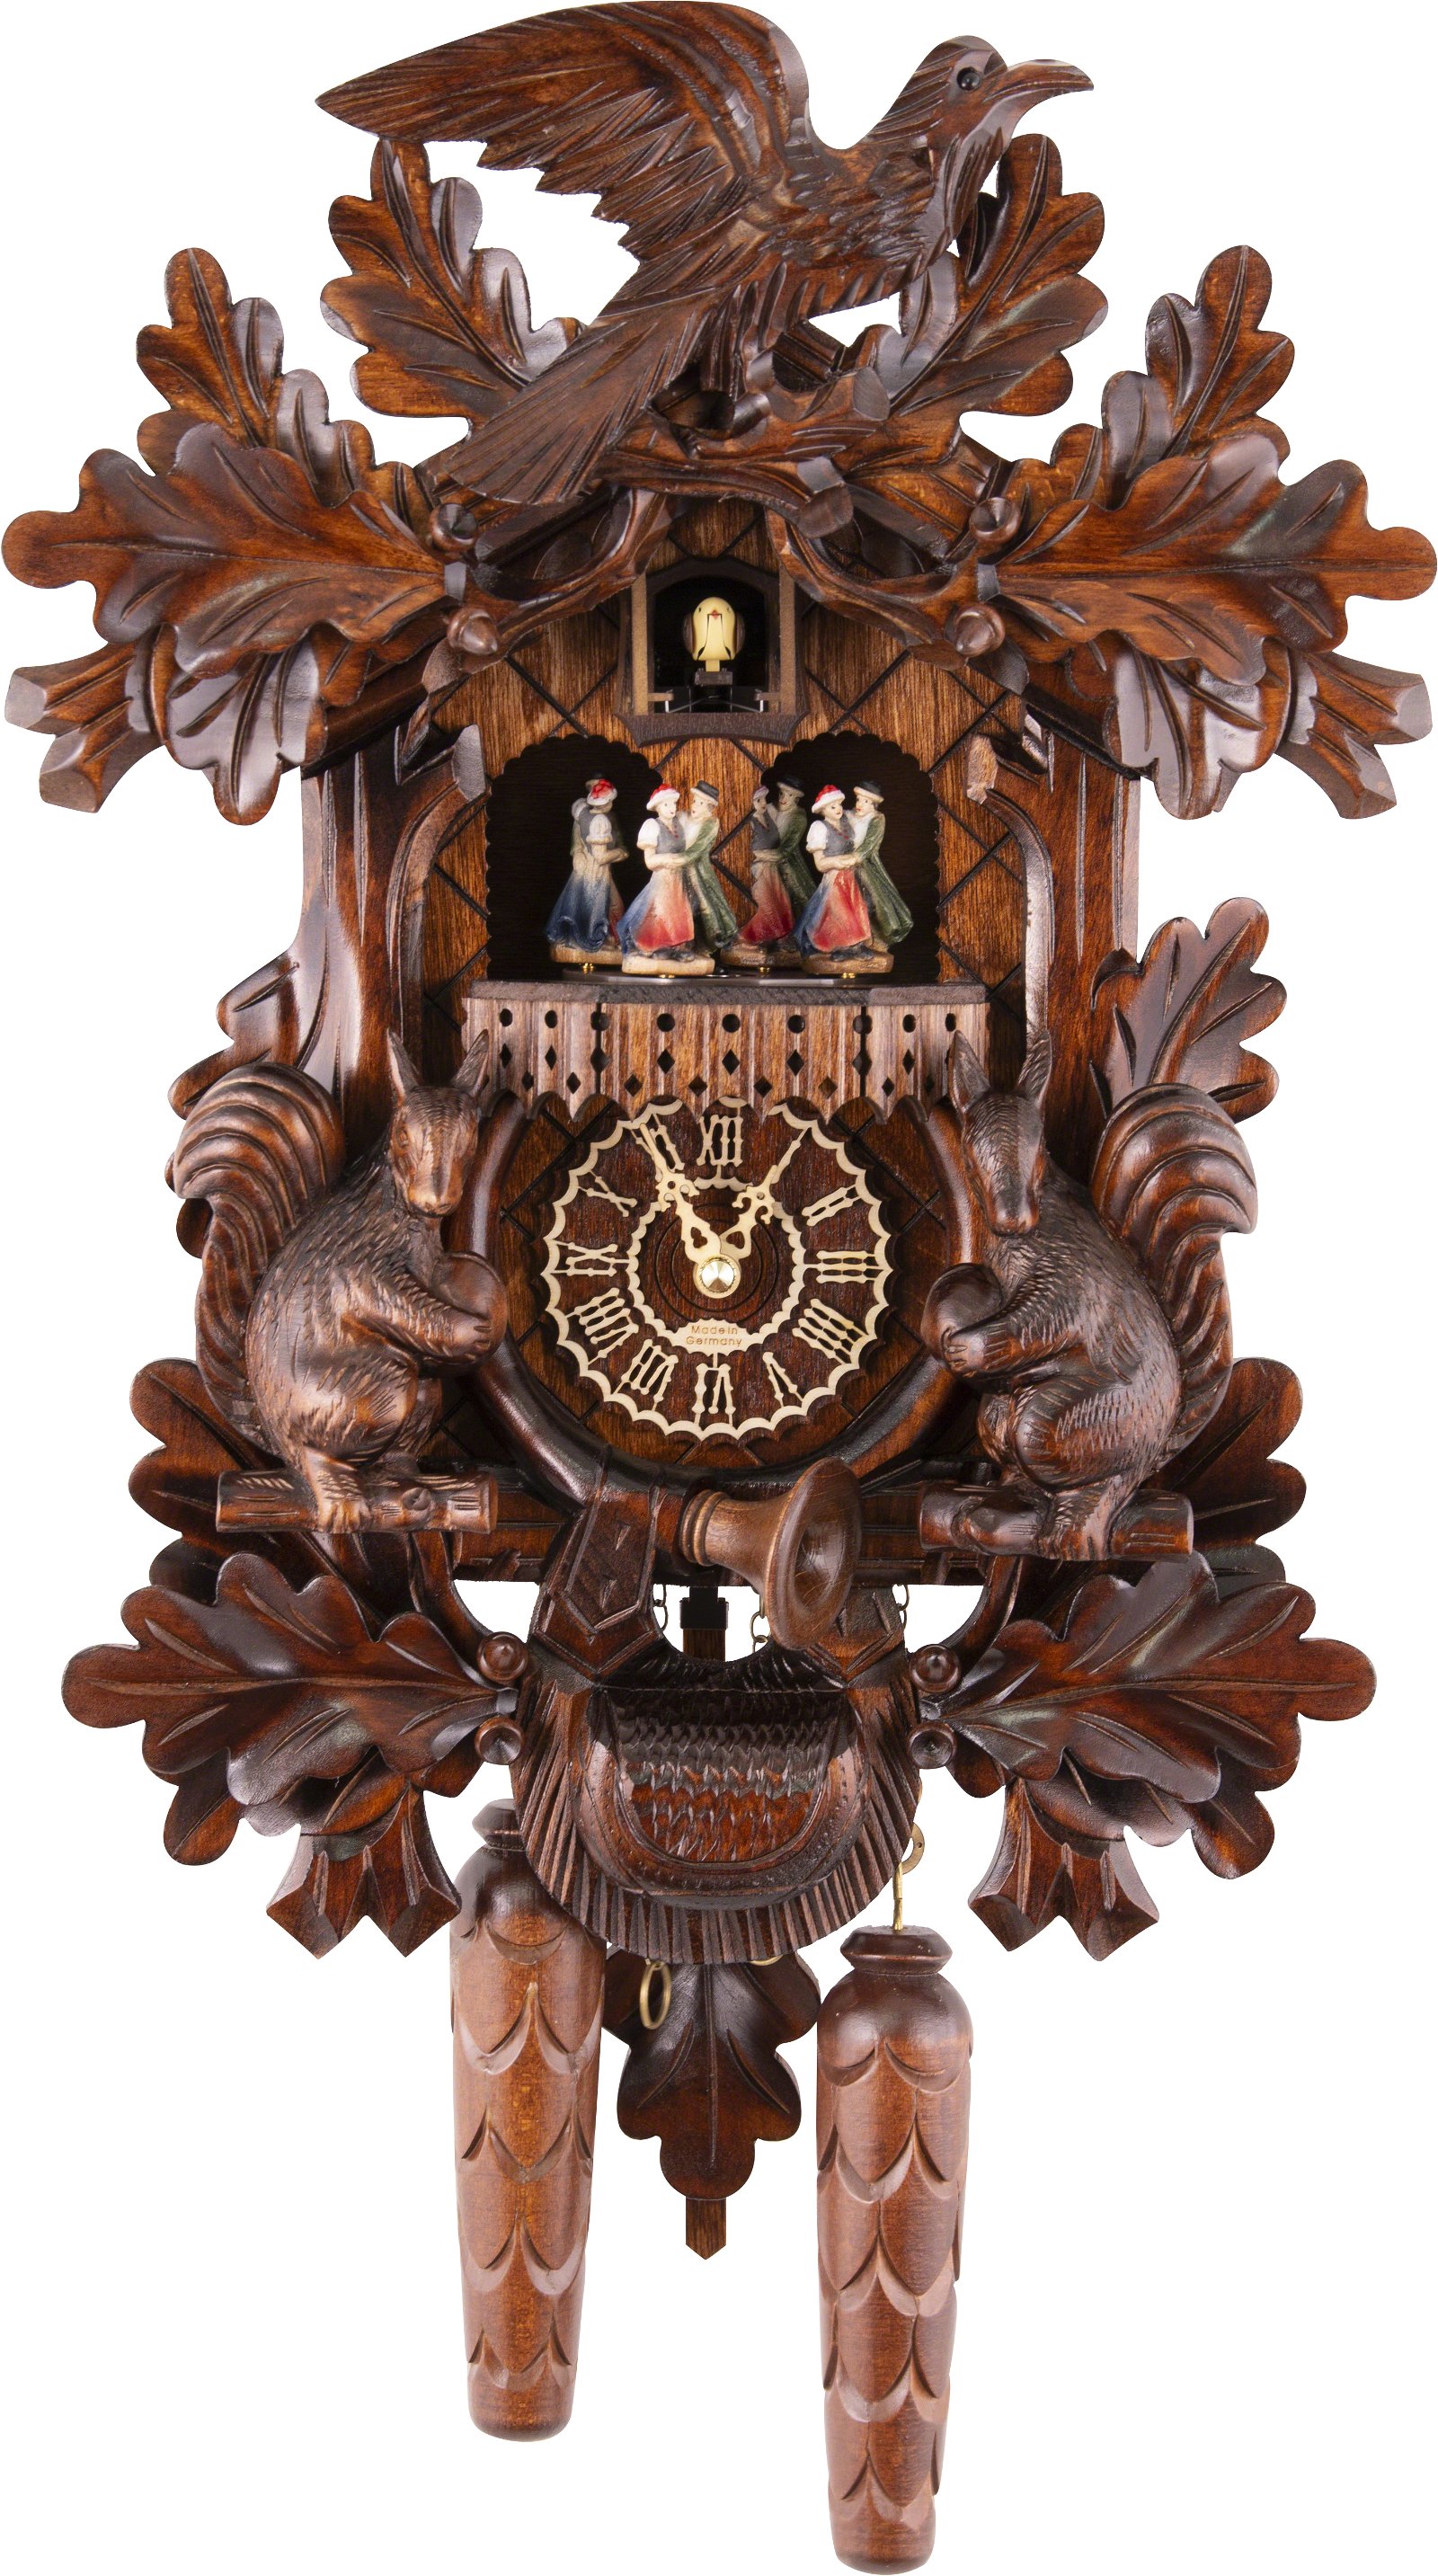 Kuckucksuhr Quarz-Uhrwerk geschnitzt 44cm von Trenkle Uhren